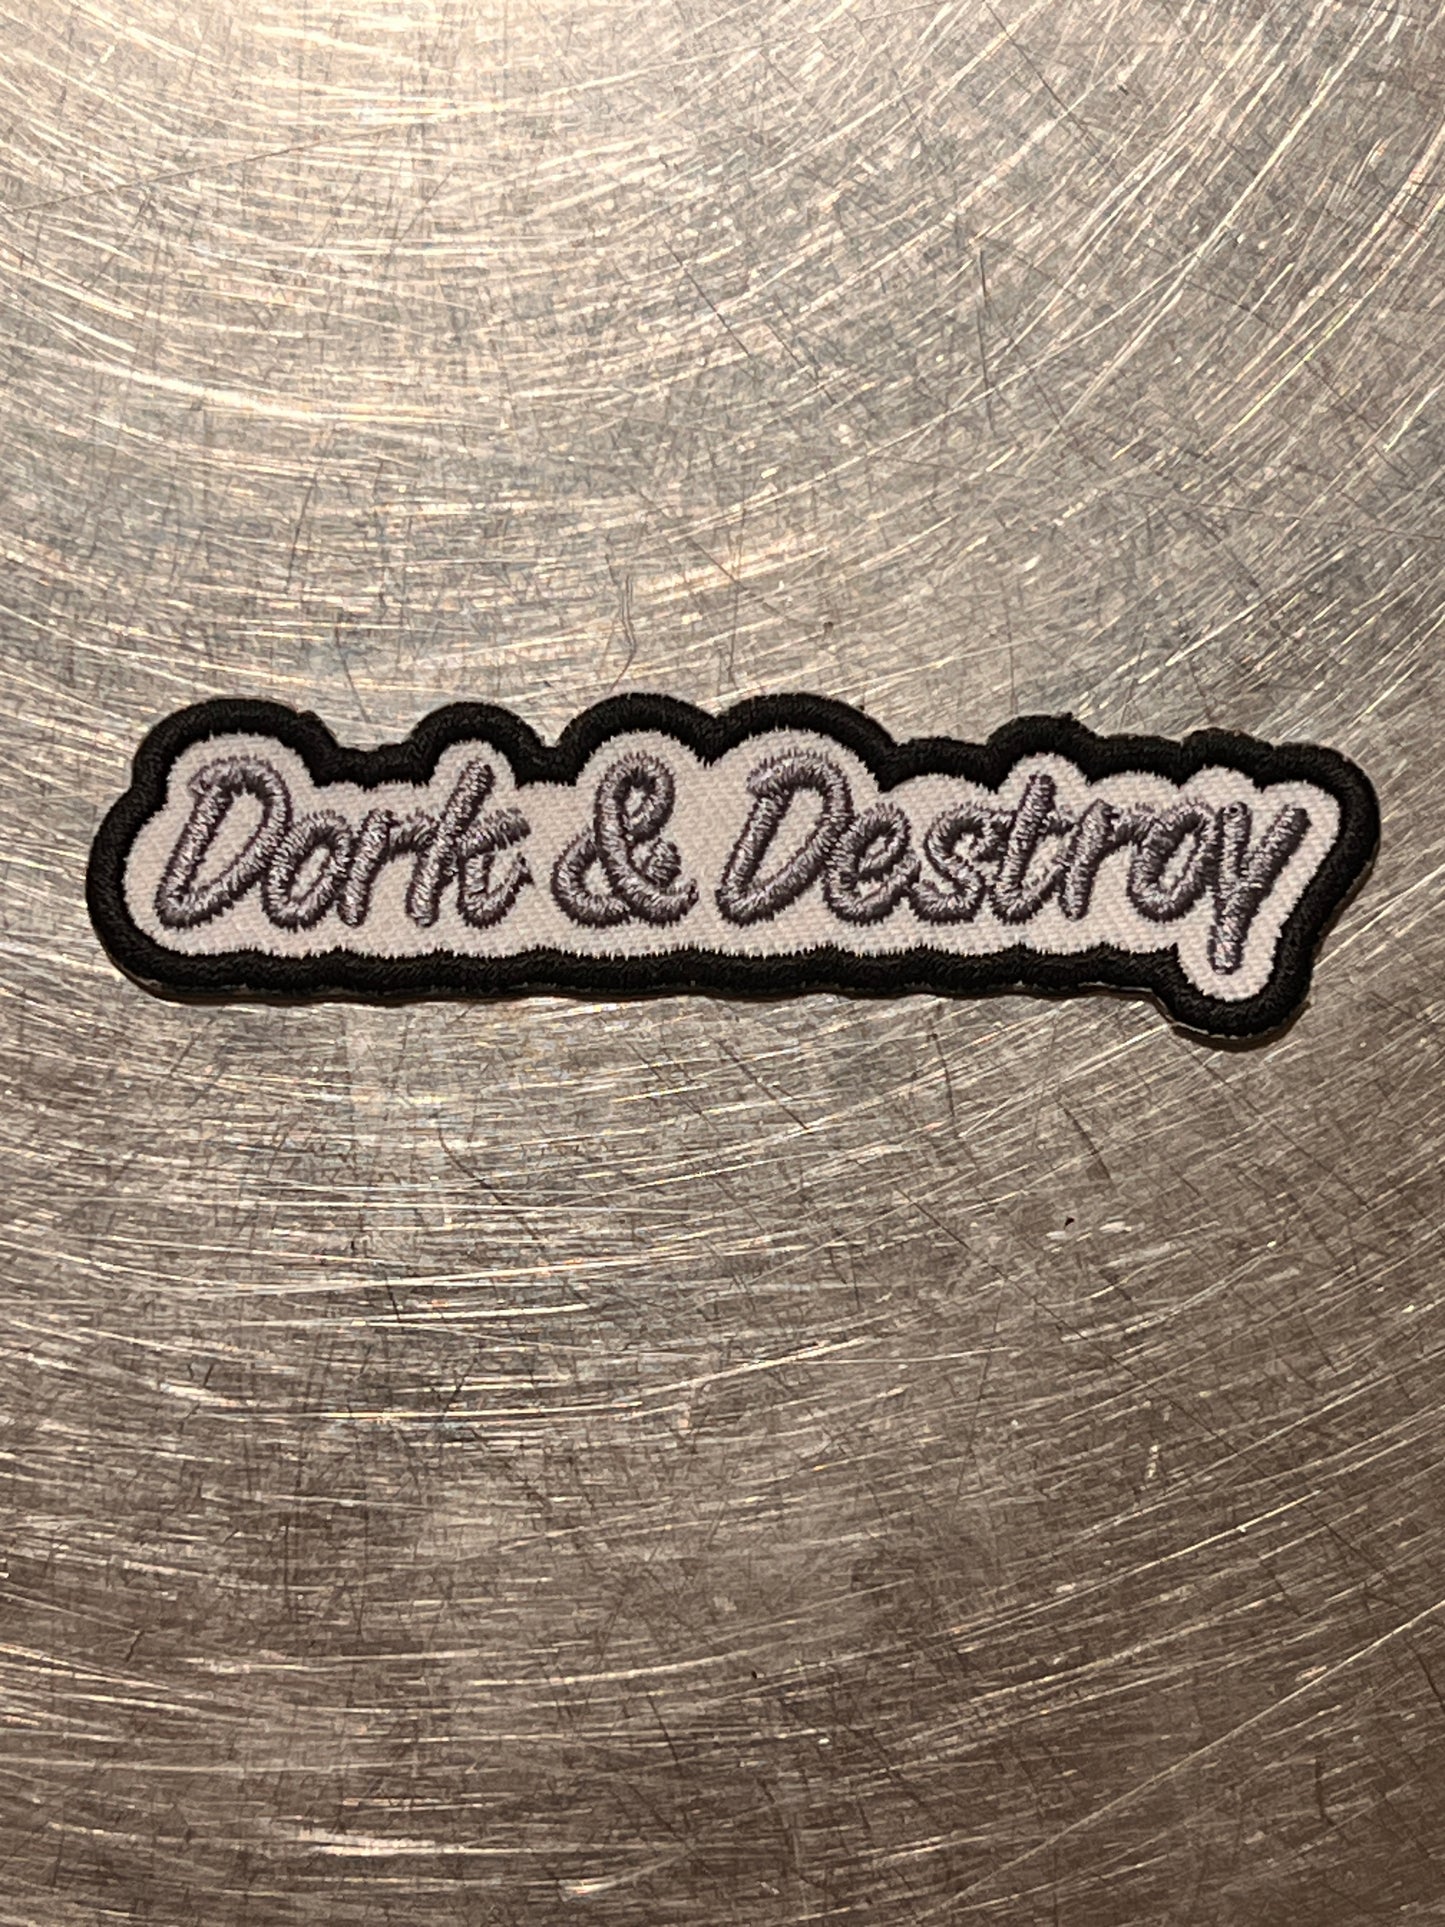 ‘Dork&Destroy’ embroidered patch